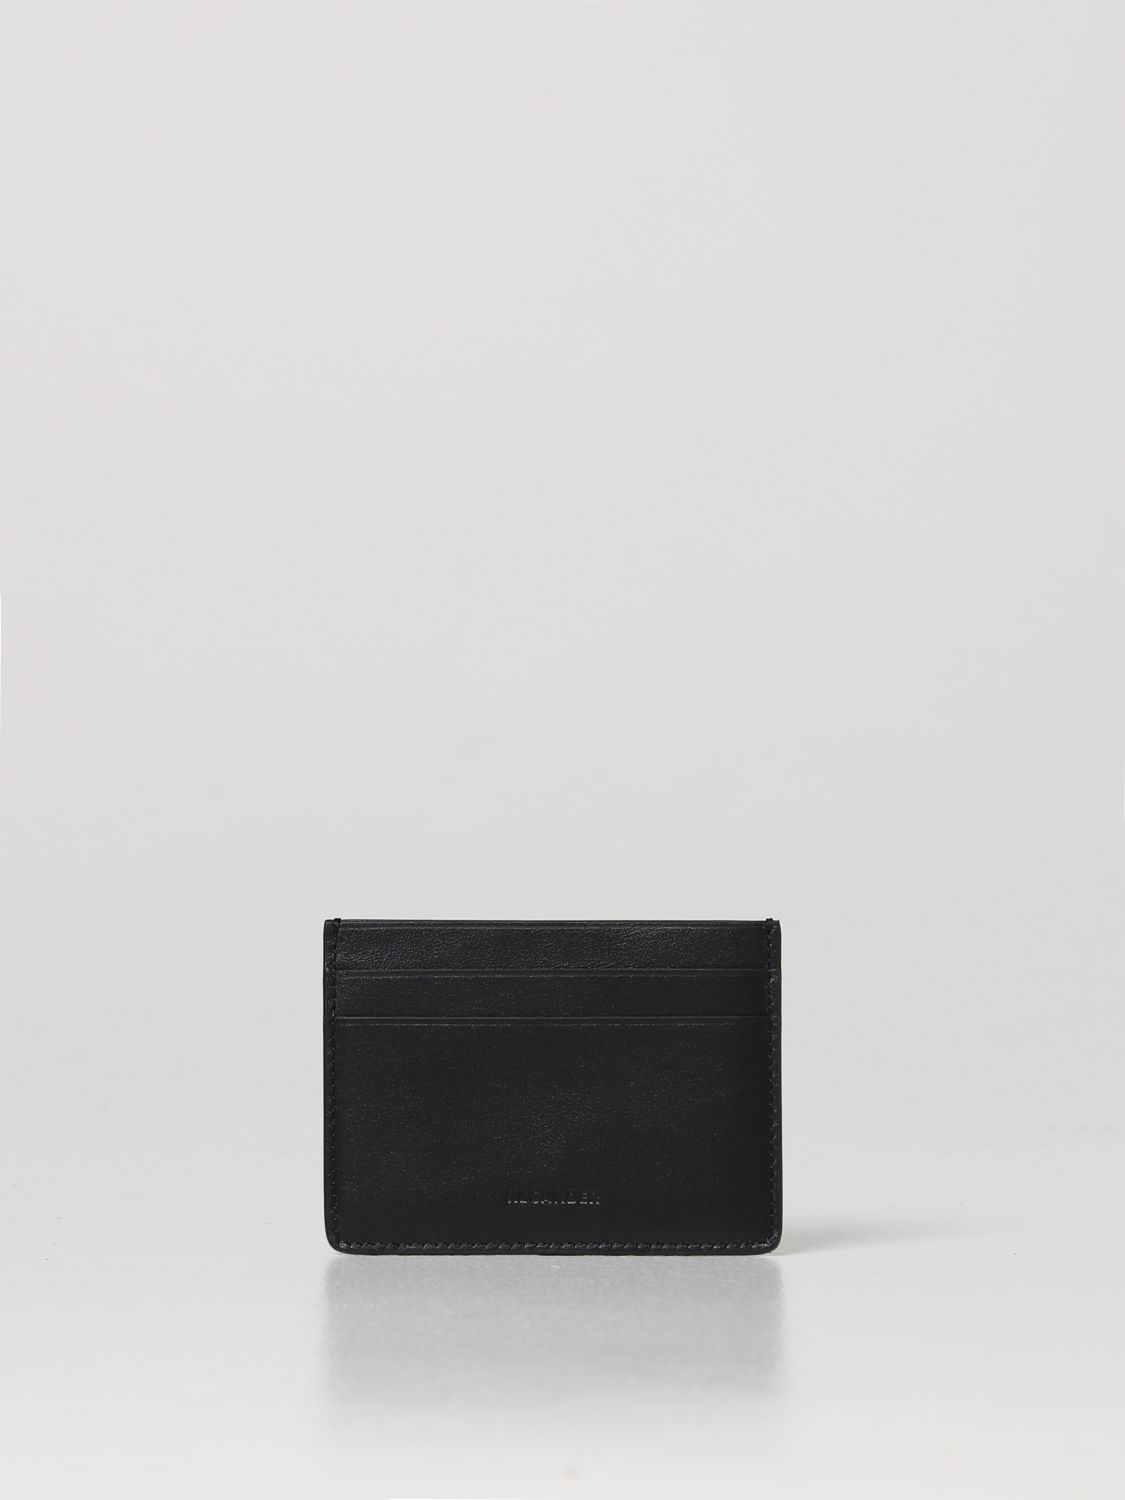 Jil Sander Outlet: wallet for man - Black | Jil Sander wallet ...